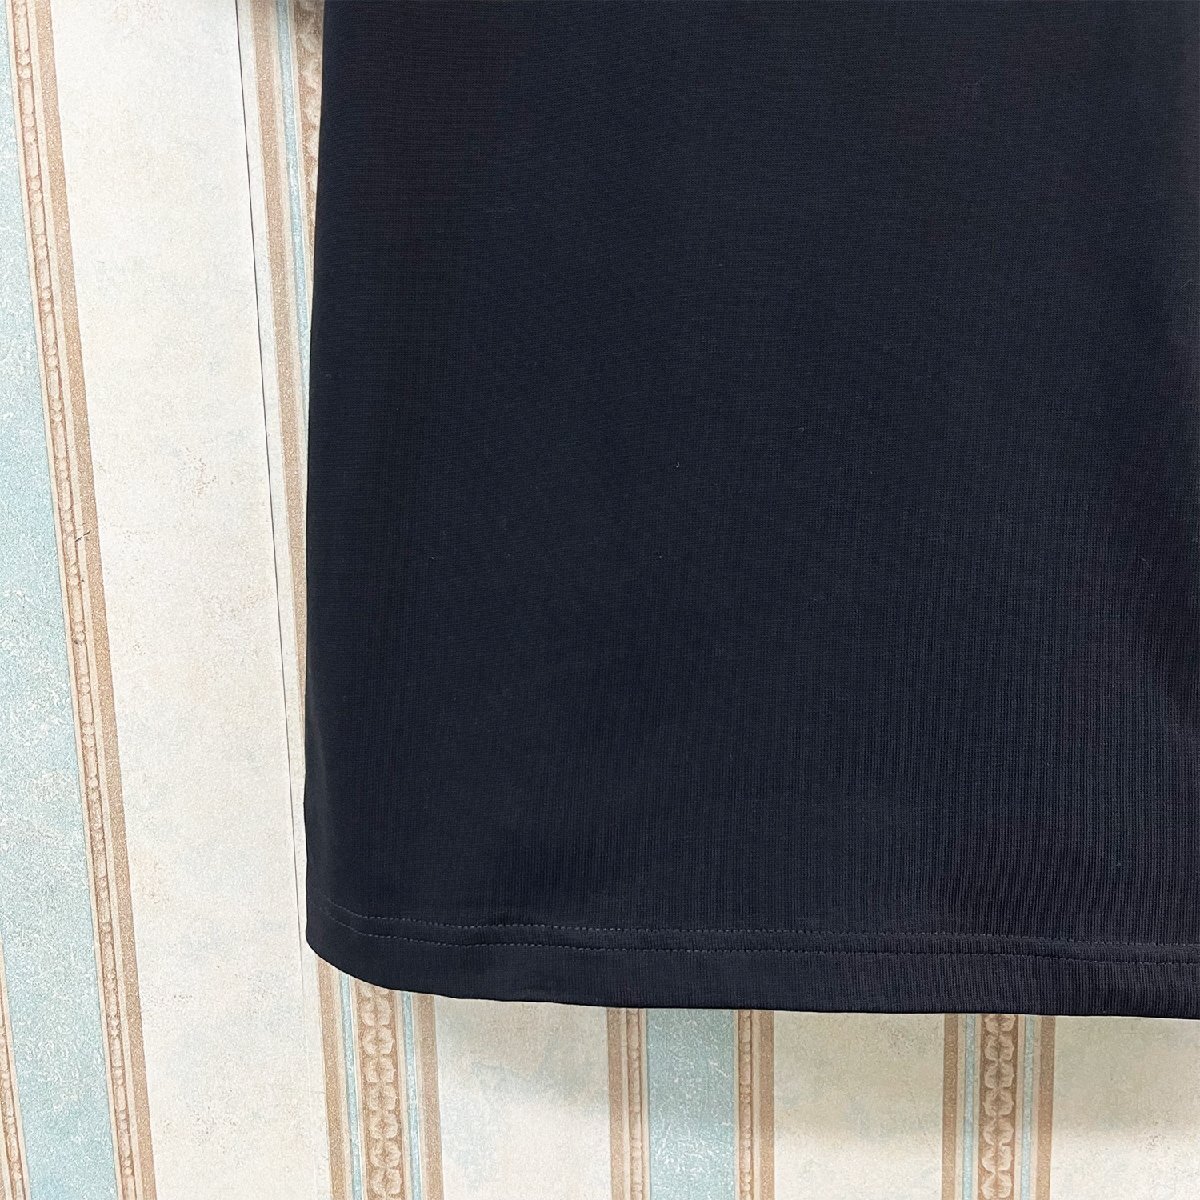 個性 定価2万 FRANKLIN MUSK・アメリカ・ニューヨーク発 半袖Tシャツ 薄手 通気 イラスト カットソー レジャー ユニセックス 夏 サイズ1_画像5